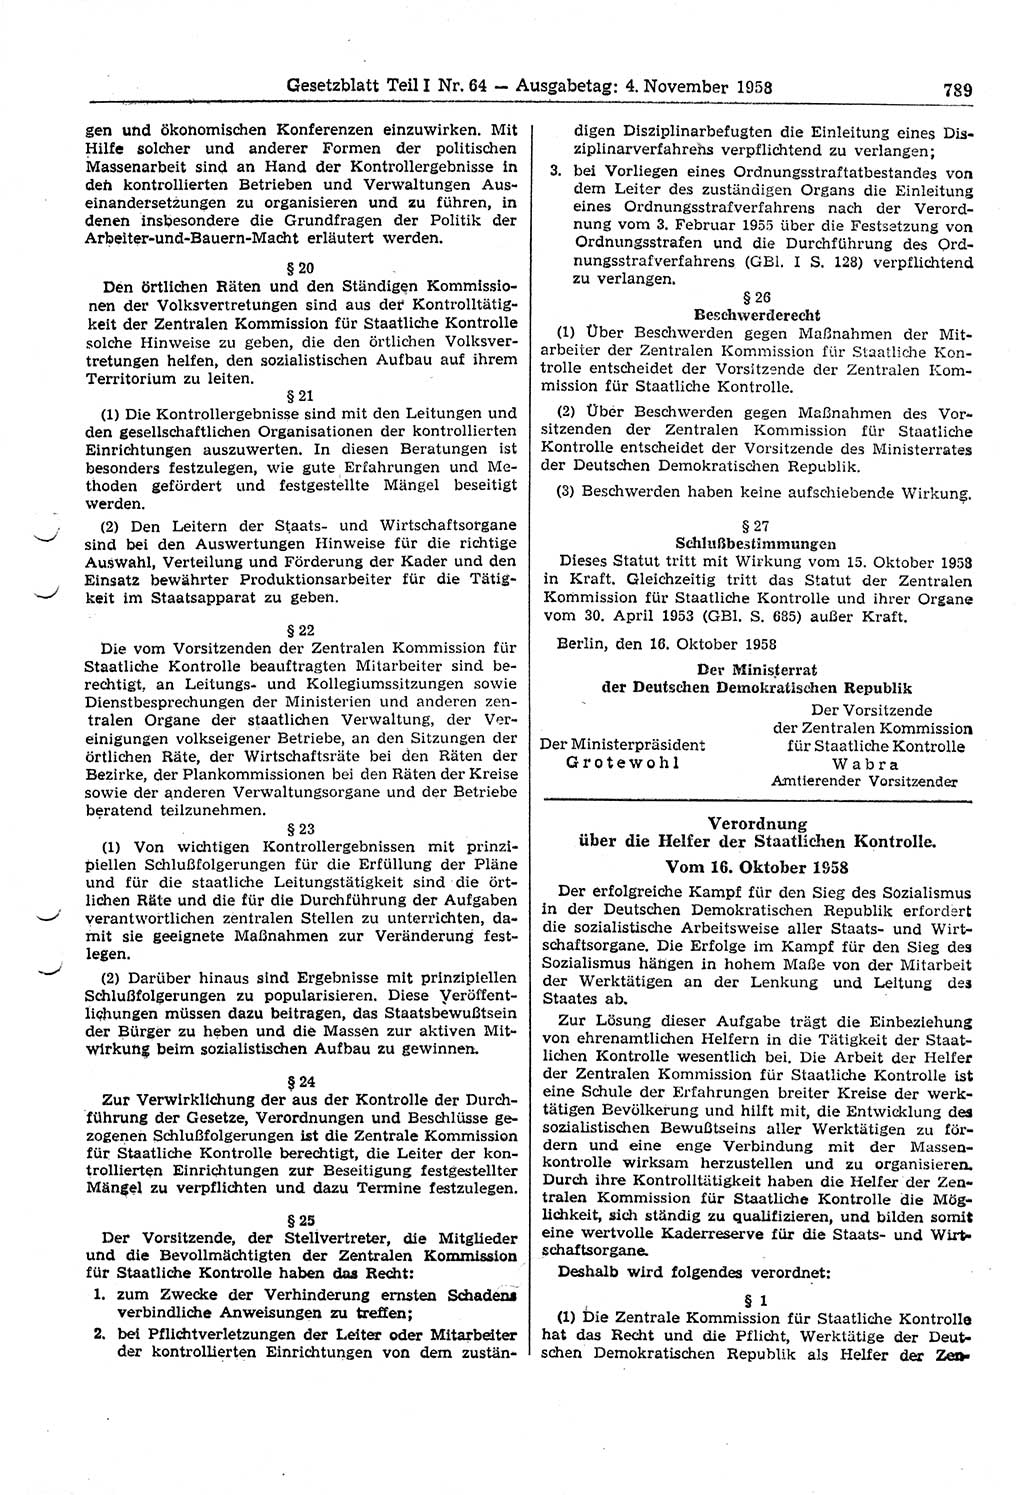 Gesetzblatt (GBl.) der Deutschen Demokratischen Republik (DDR) Teil â… 1958, Seite 789 (GBl. DDR â… 1958, S. 789)